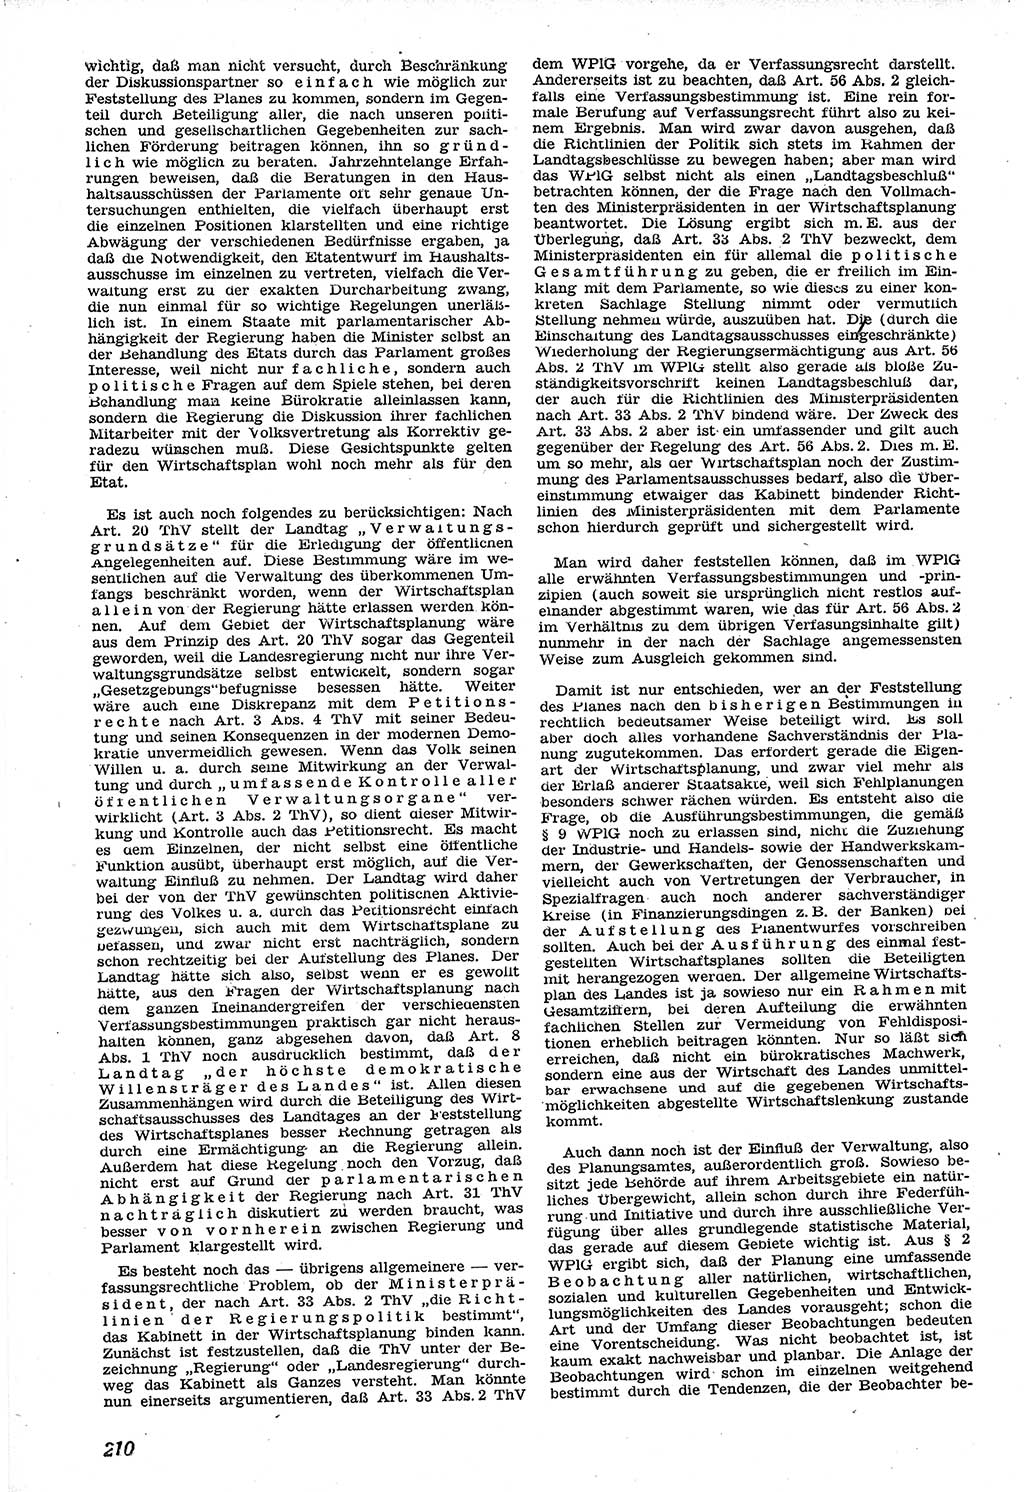 Neue Justiz (NJ), Zeitschrift für Recht und Rechtswissenschaft [Sowjetische Besatzungszone (SBZ) Deutschland], 1. Jahrgang 1947, Seite 210 (NJ SBZ Dtl. 1947, S. 210)